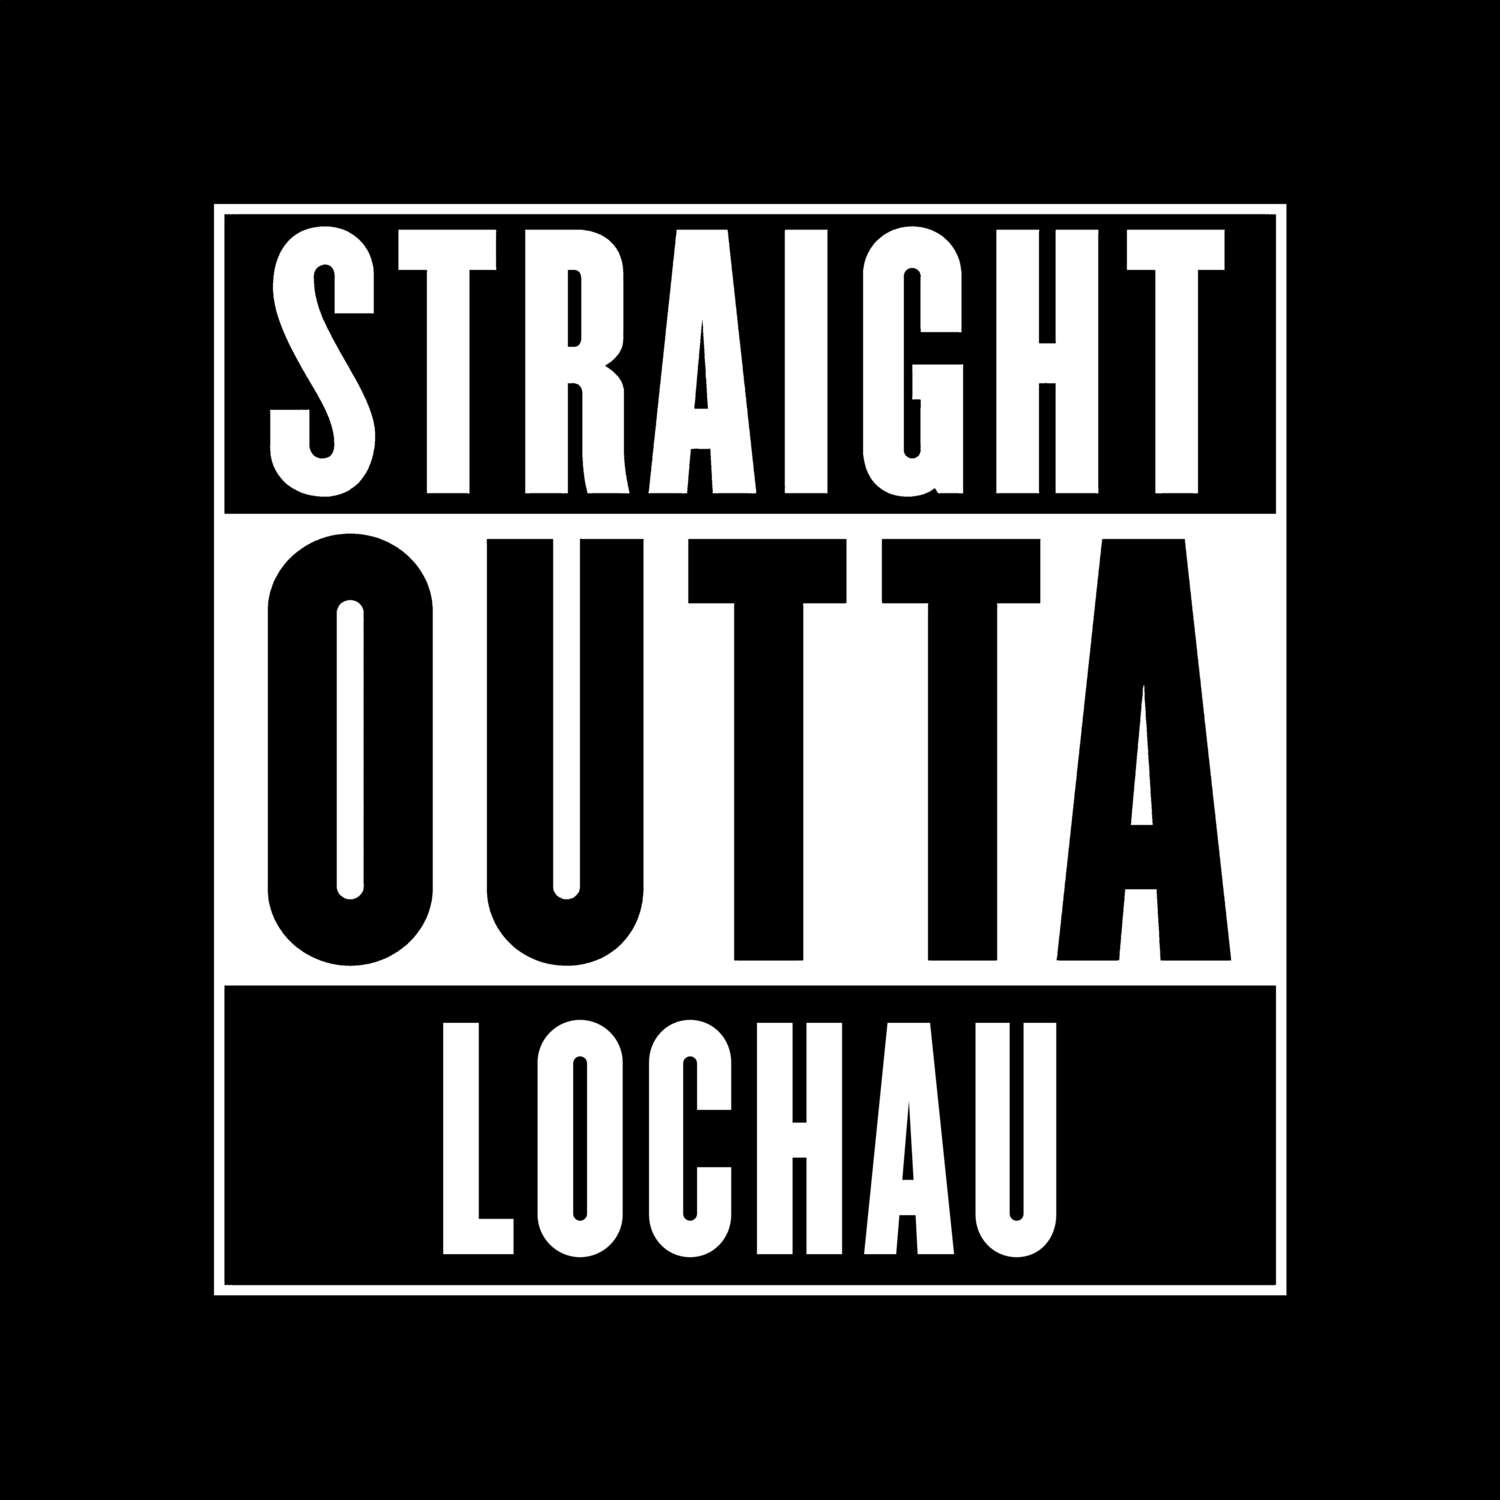 Lochau T-Shirt »Straight Outta«